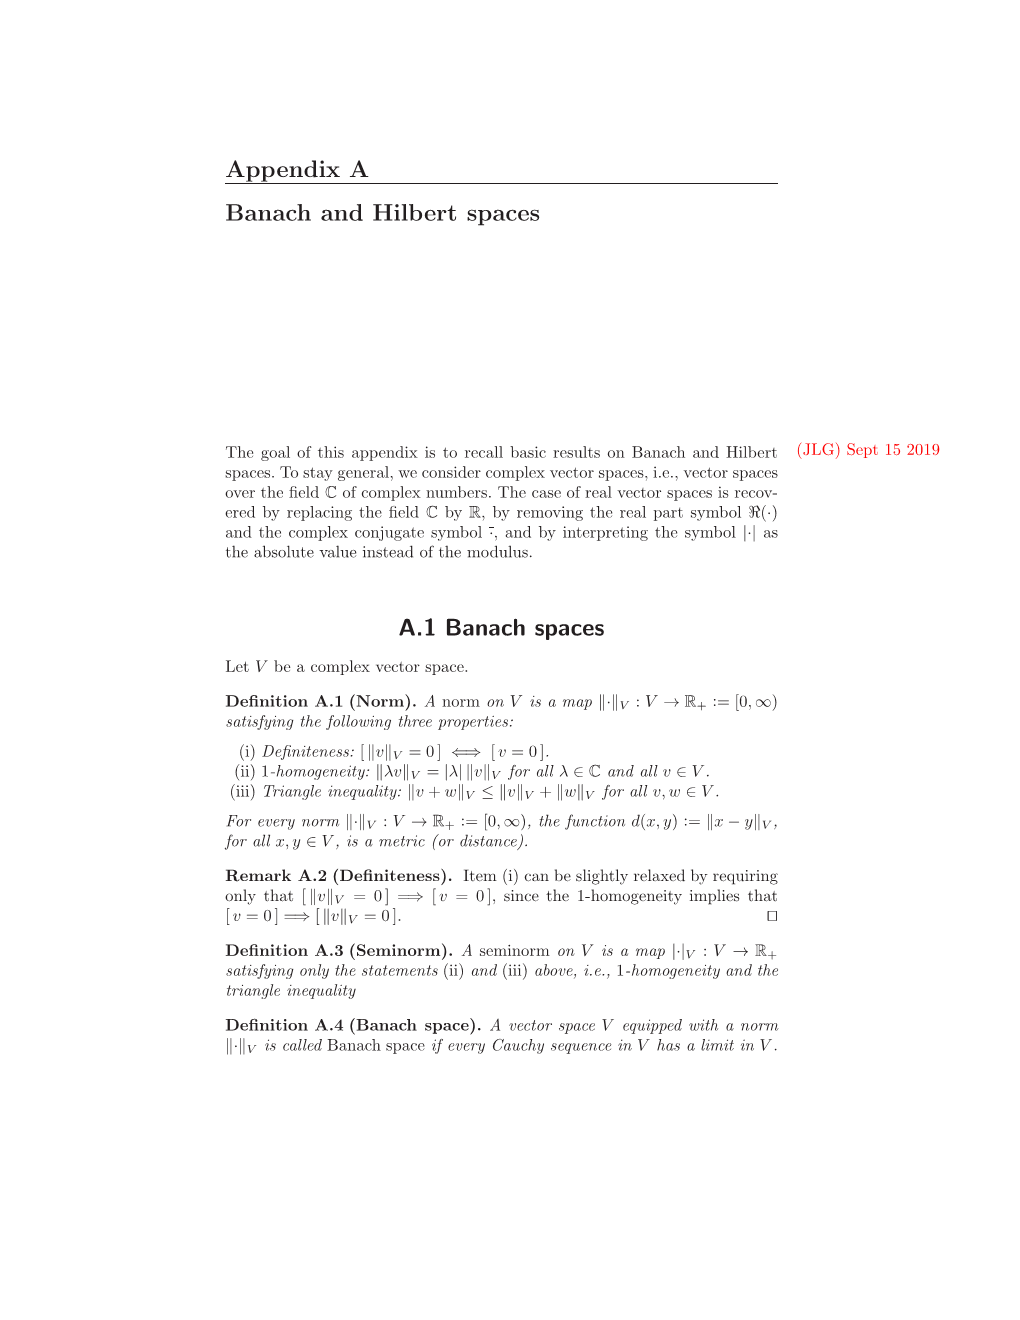 Appendix a Banach and Hilbert Spaces A.1 Banach Spaces